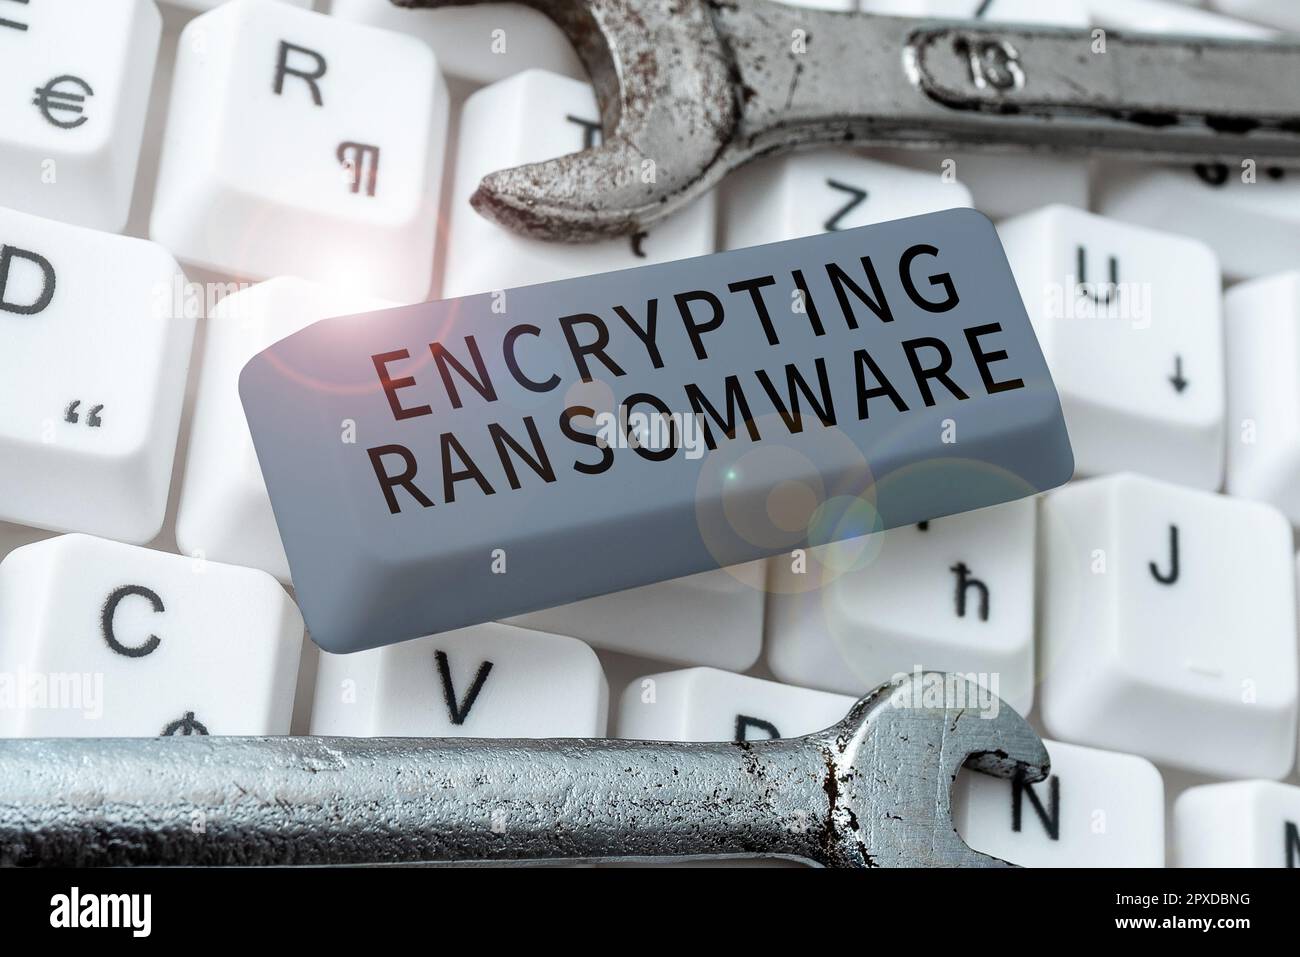 Affichage du panneau crypter ransomware, Business concept Protégez les données confidentielles contre les attaquants ayant accès Banque D'Images